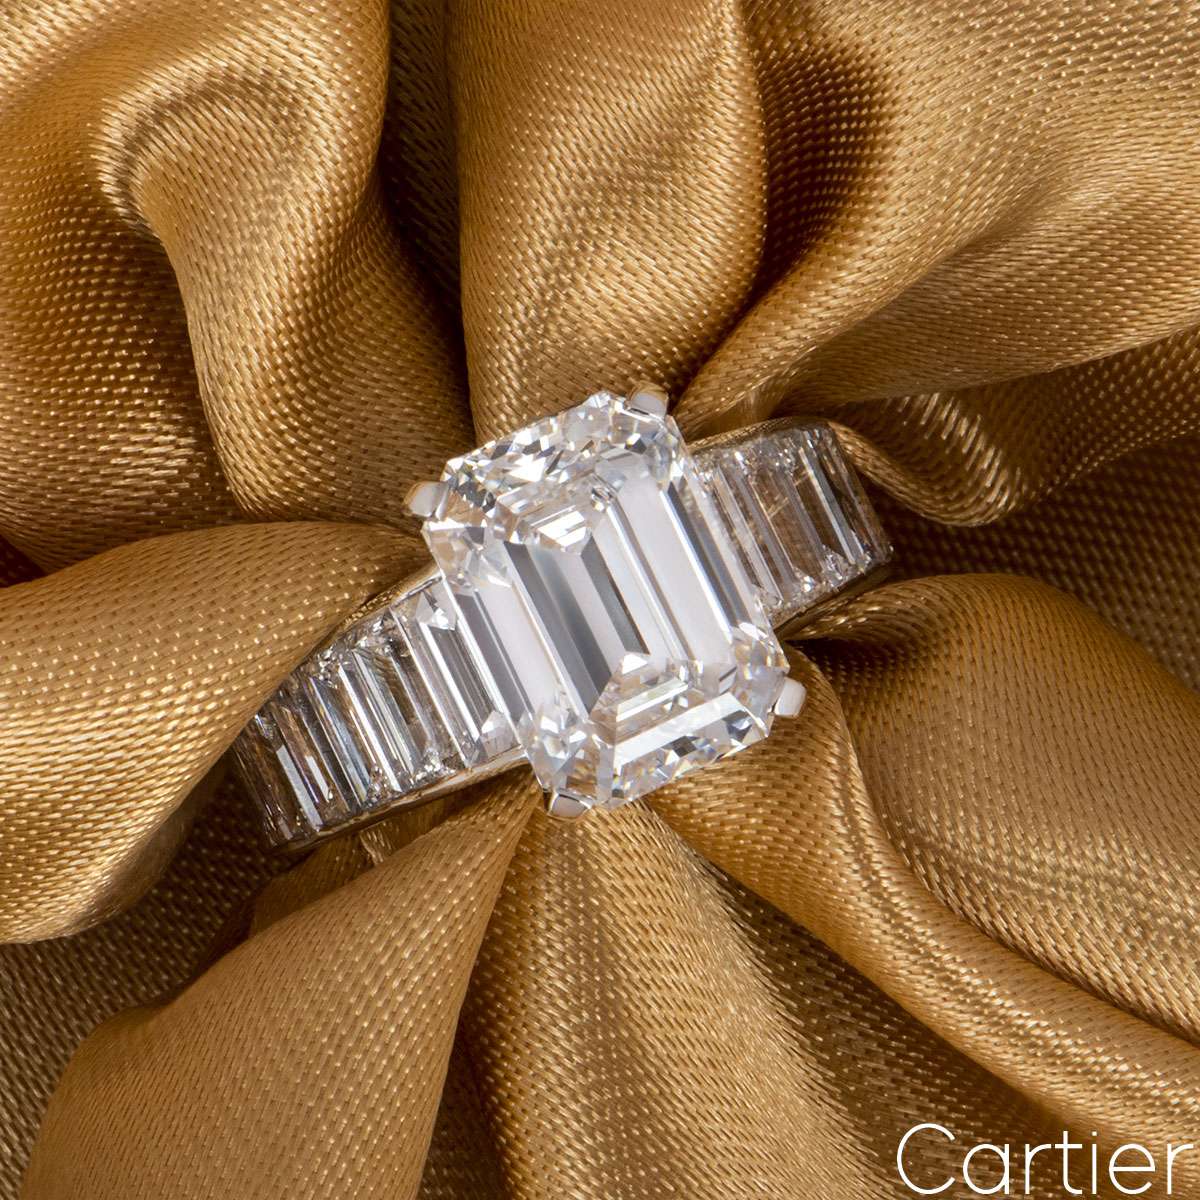 cartier emerald cut wedding ring